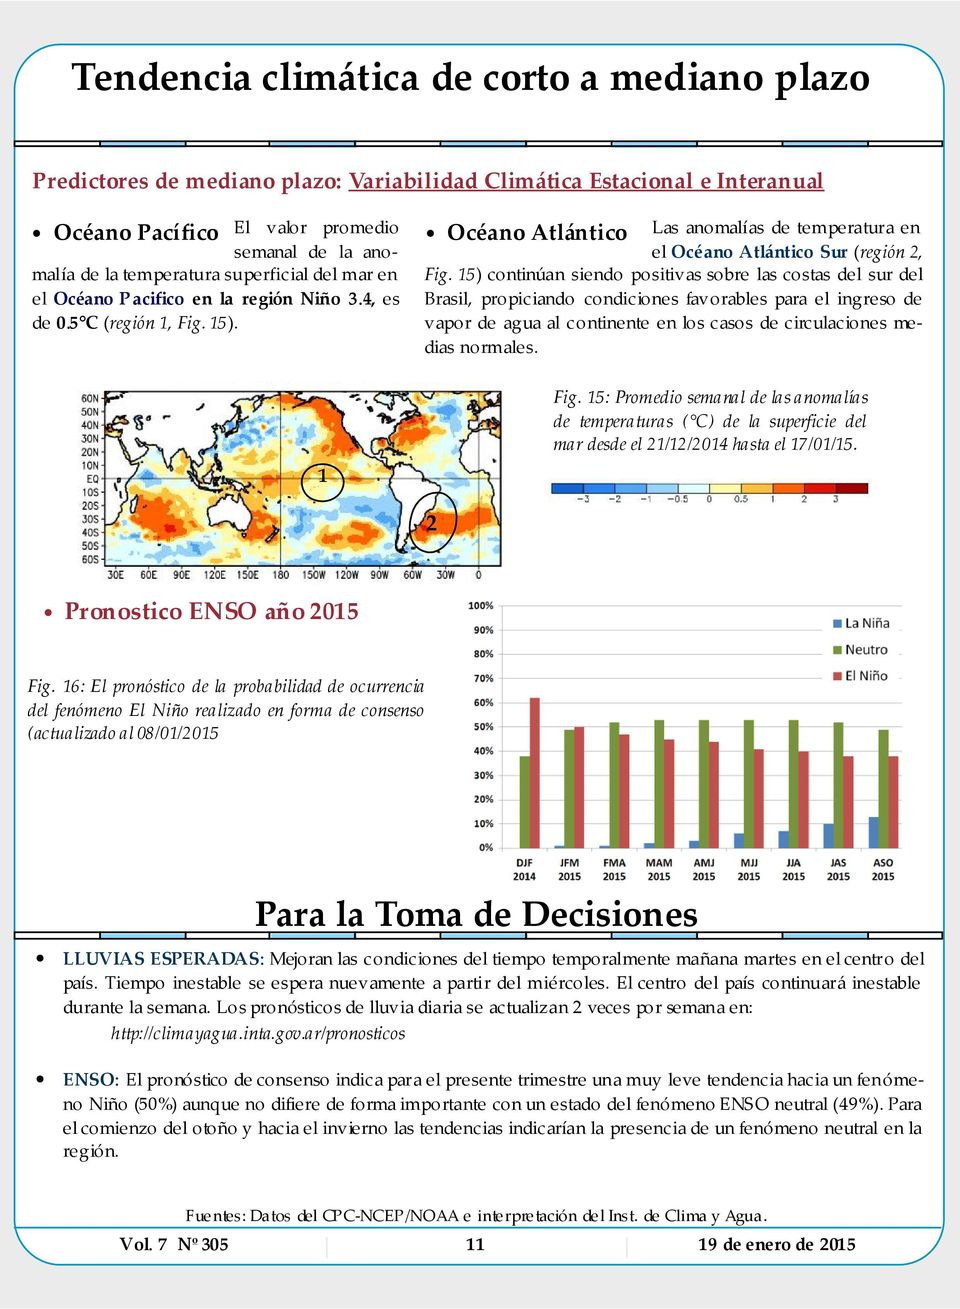 15) continúan siendo positivas sobre las costas del sur del Brasil, propiciando condiciones favorables para el ingreso de vapor de agua al continente en los casos de circulaciones medias normales.